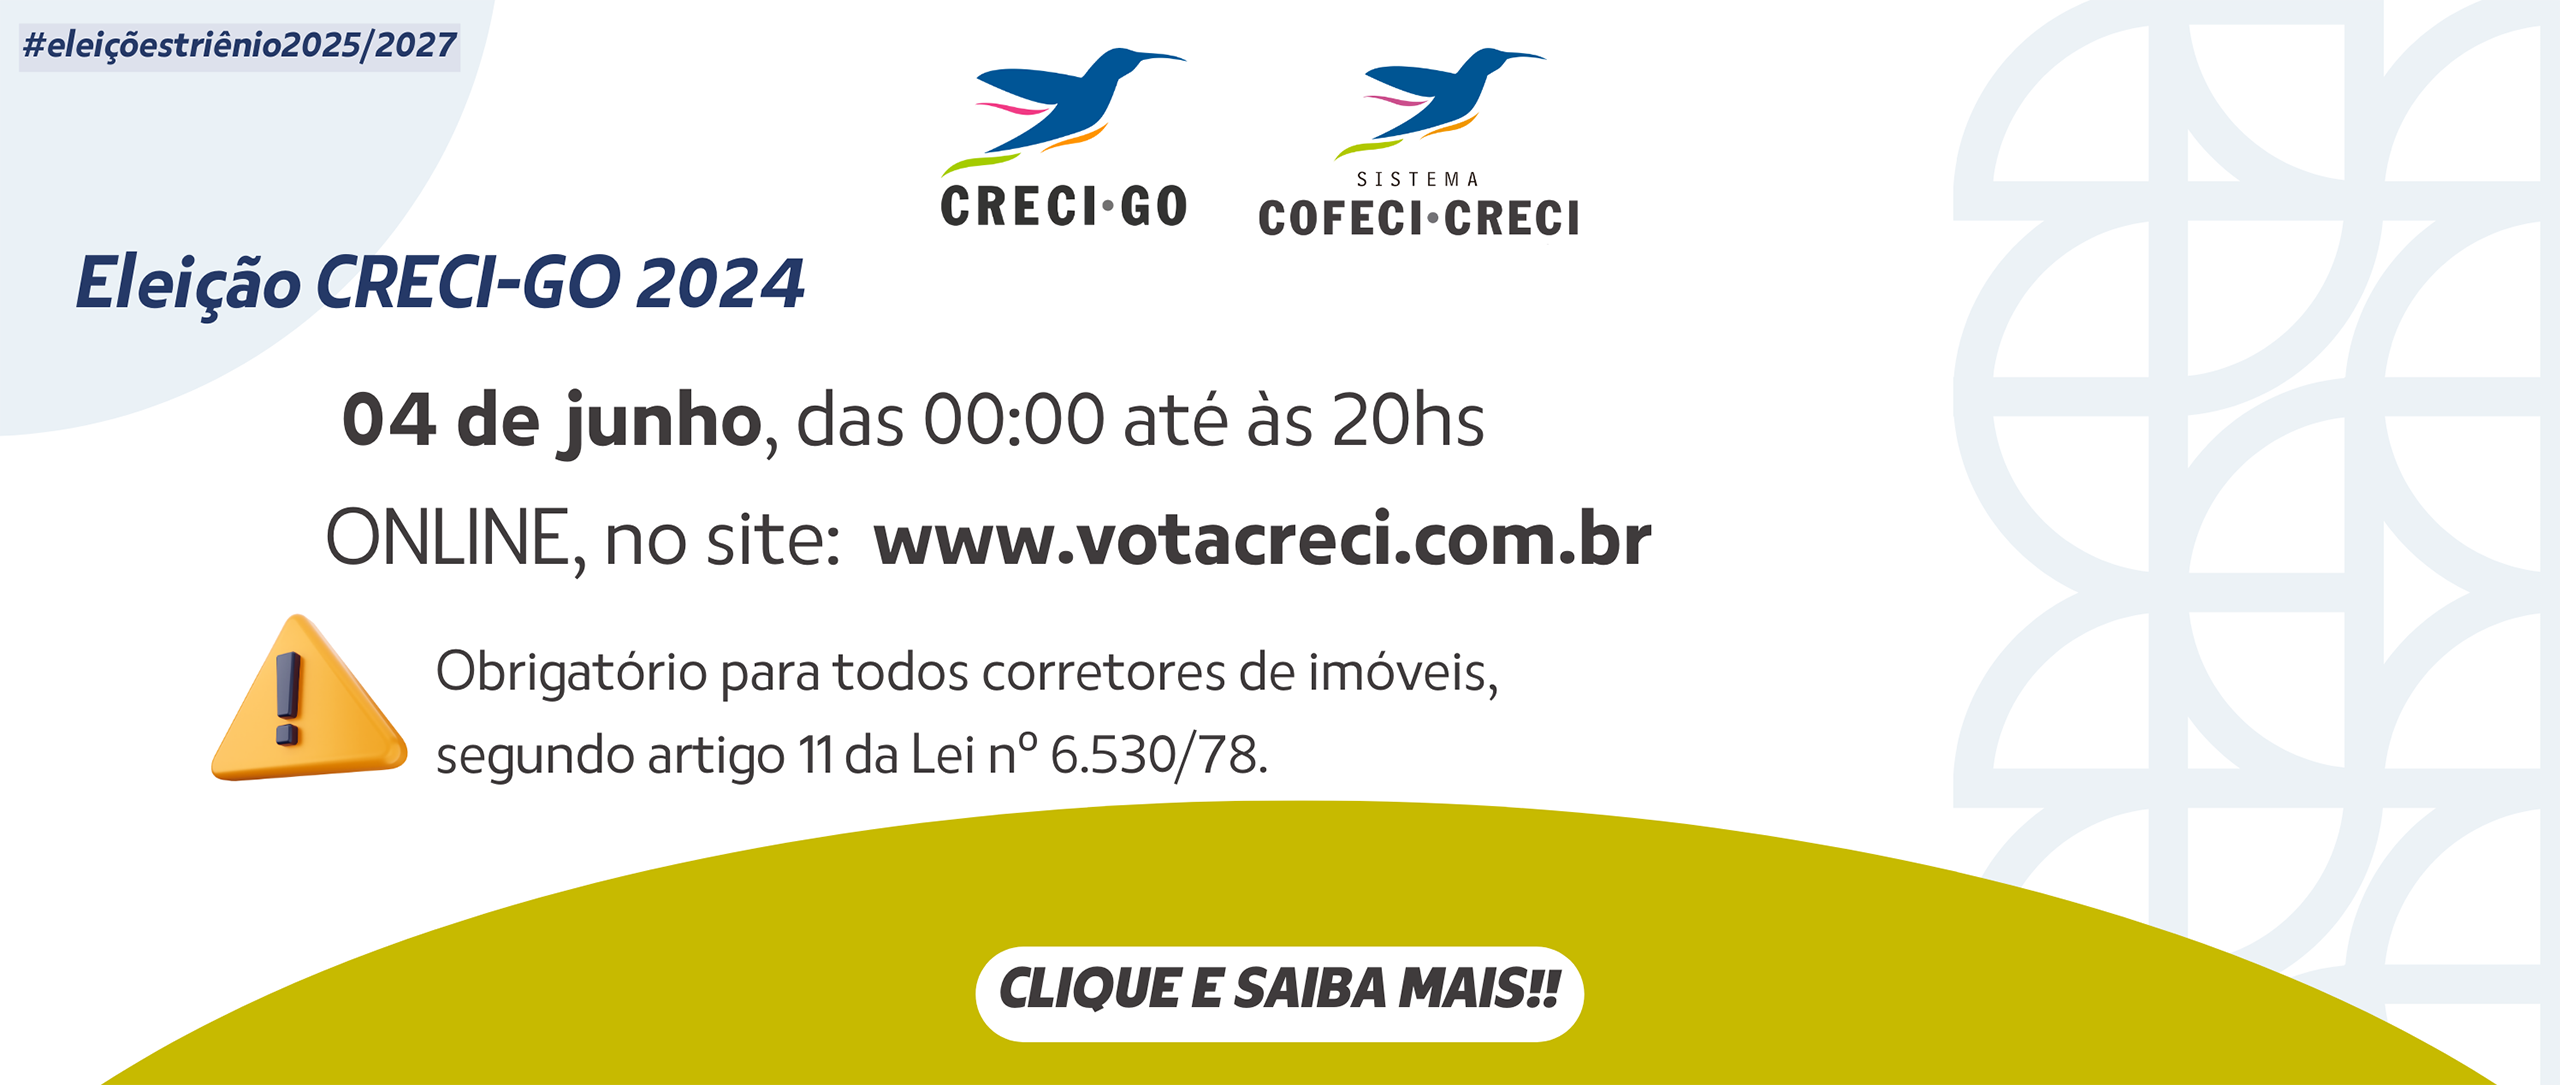 04 de junho, das 0000 até às 20hs ONLINE, no site www.votacreci.com.br (2)